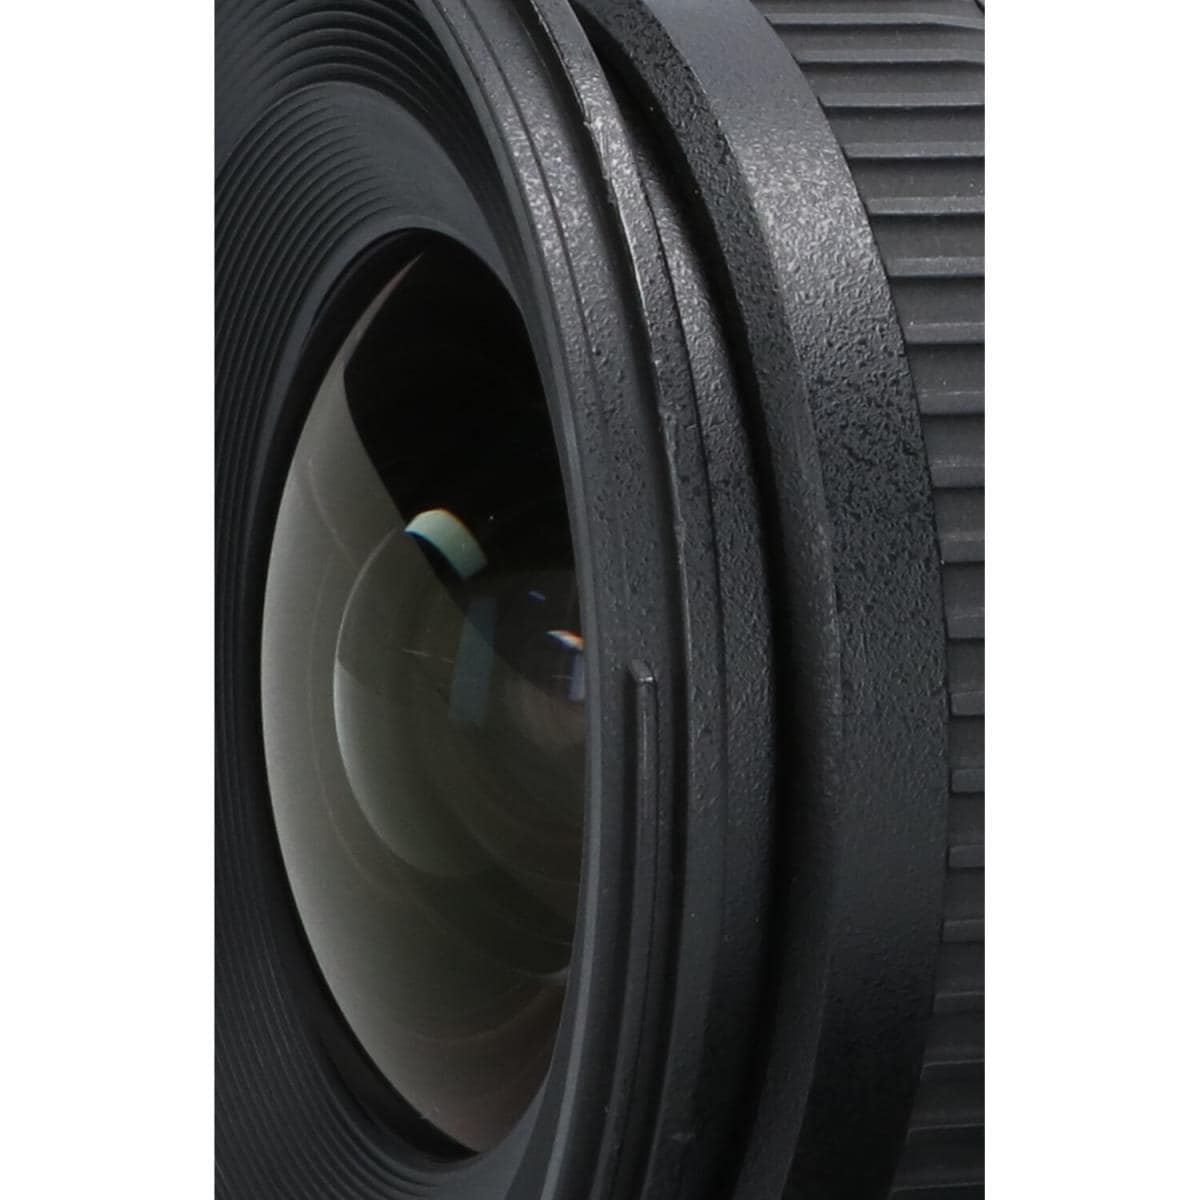 TAMRON Nikon 10-24mm F3.5-4.5DIII B001